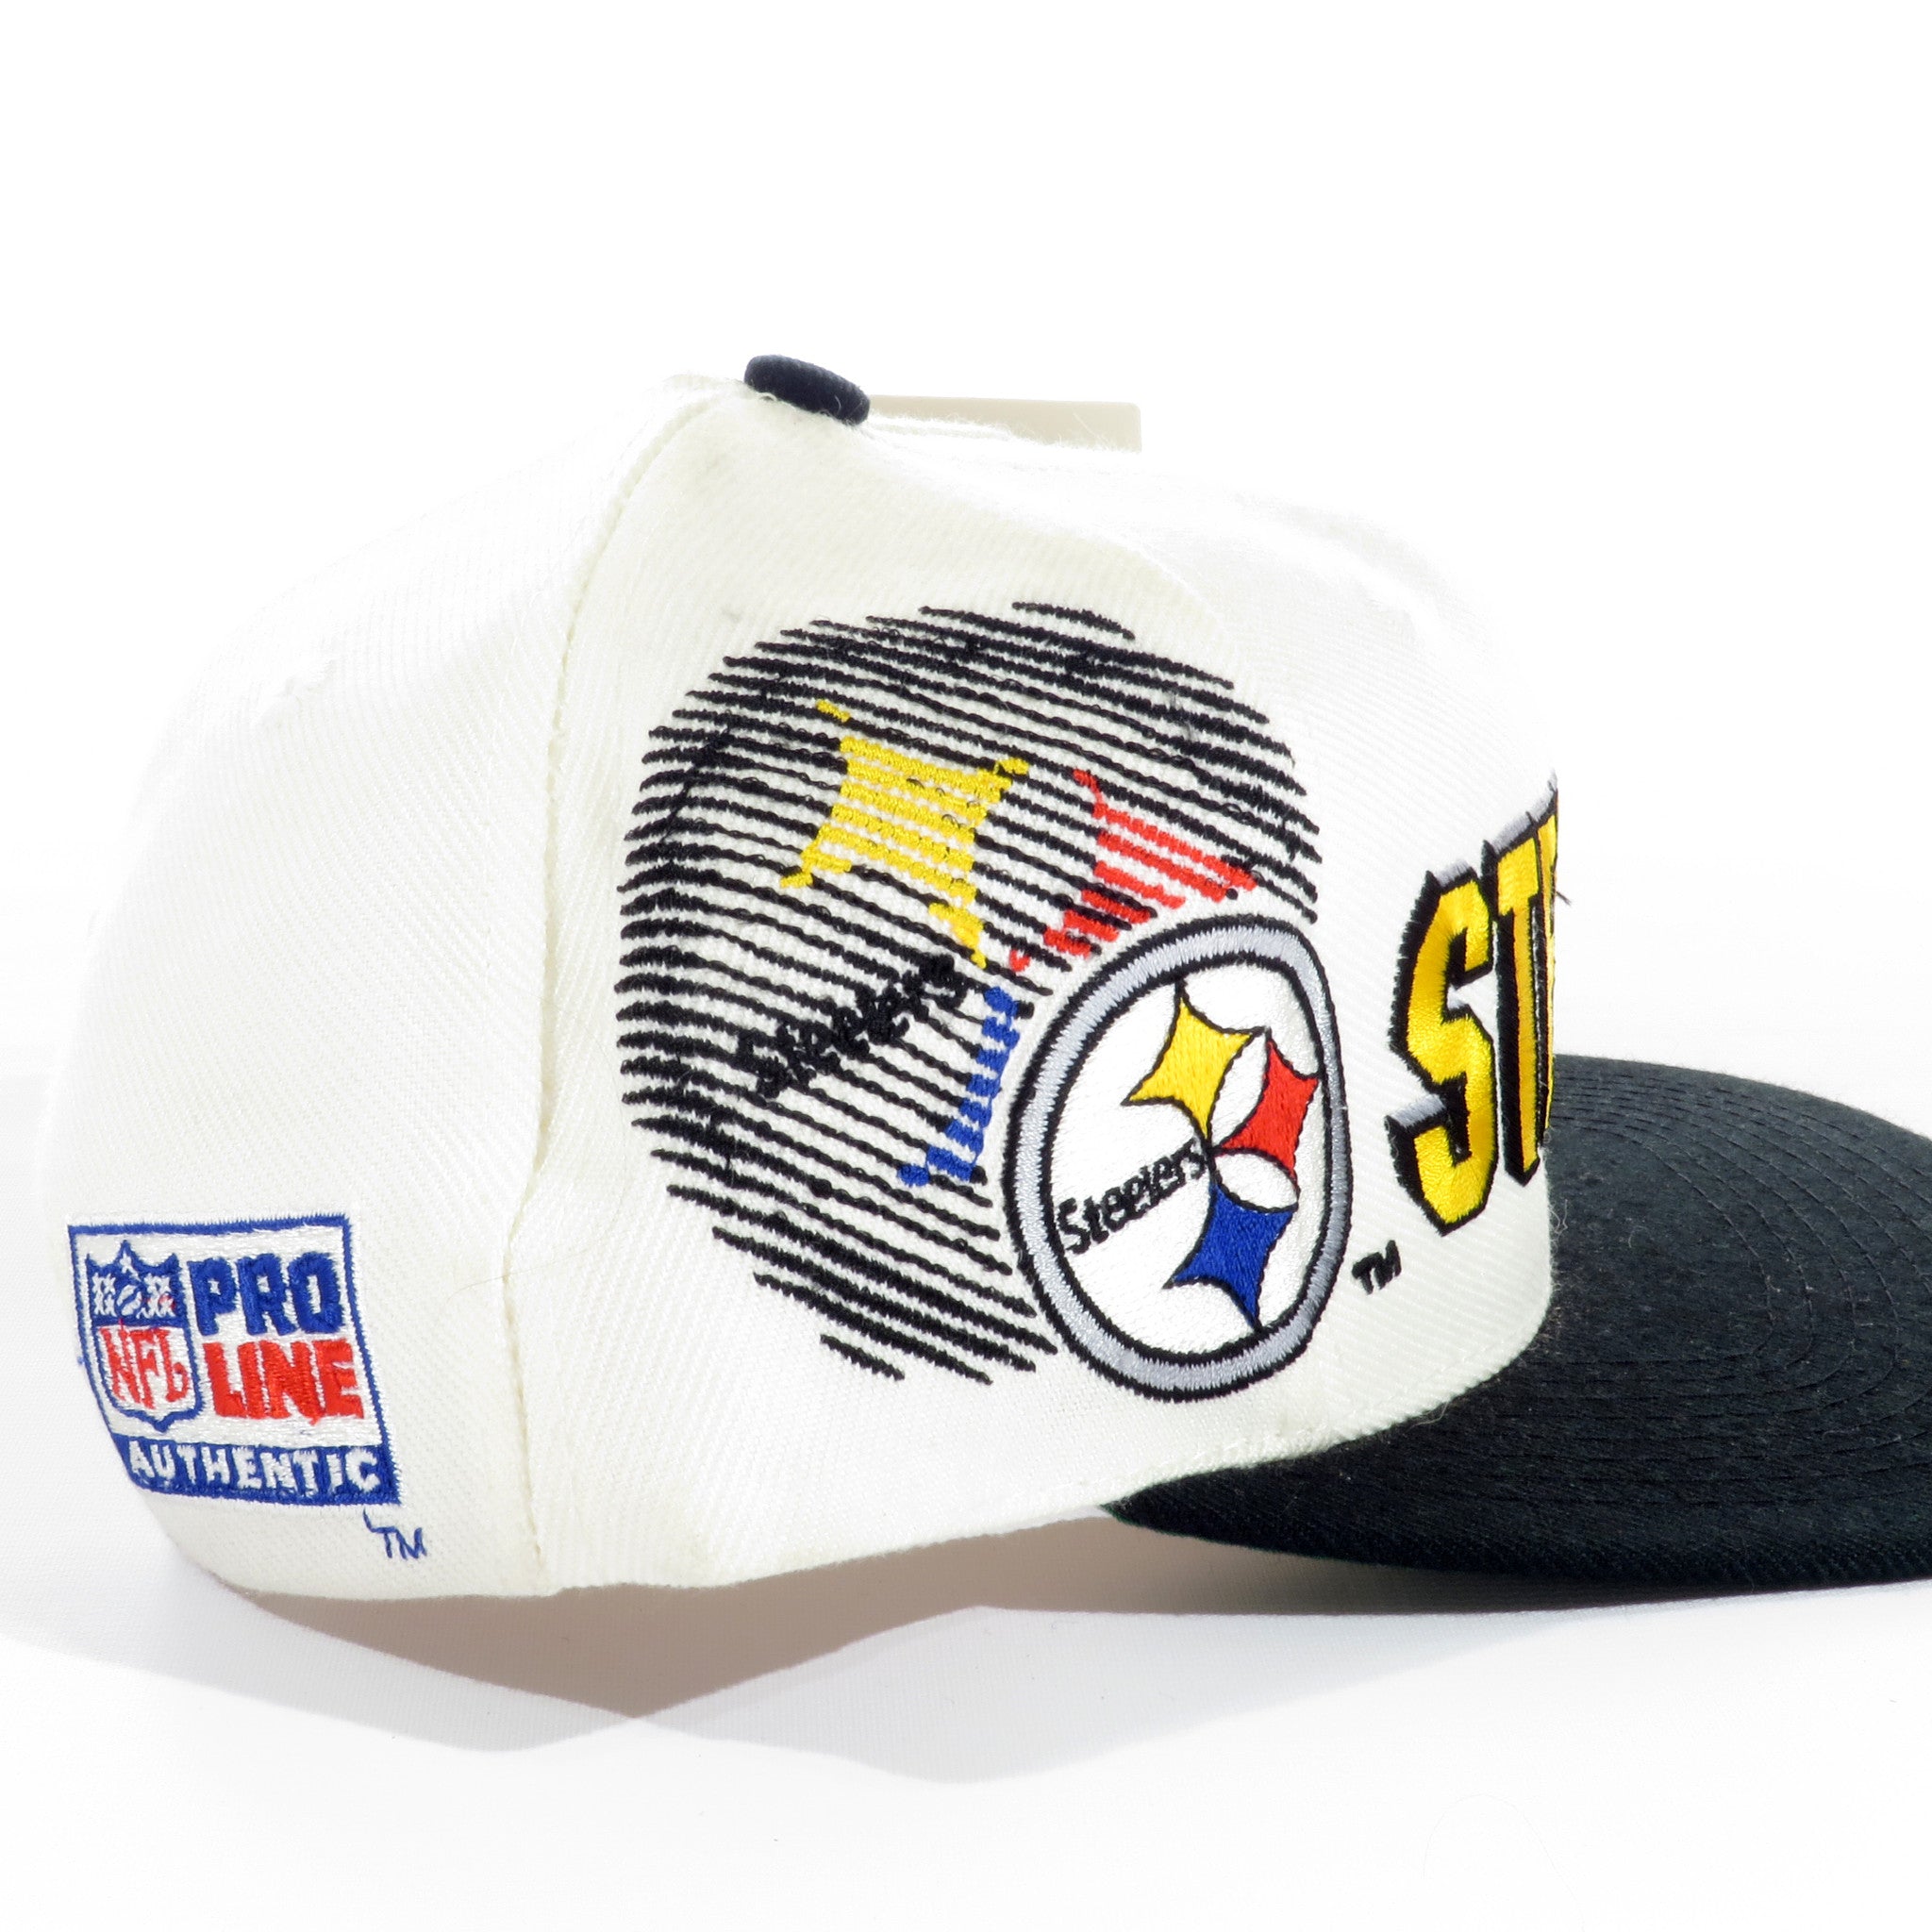 Pittsburgh Steelers Shadow Snapback Hat